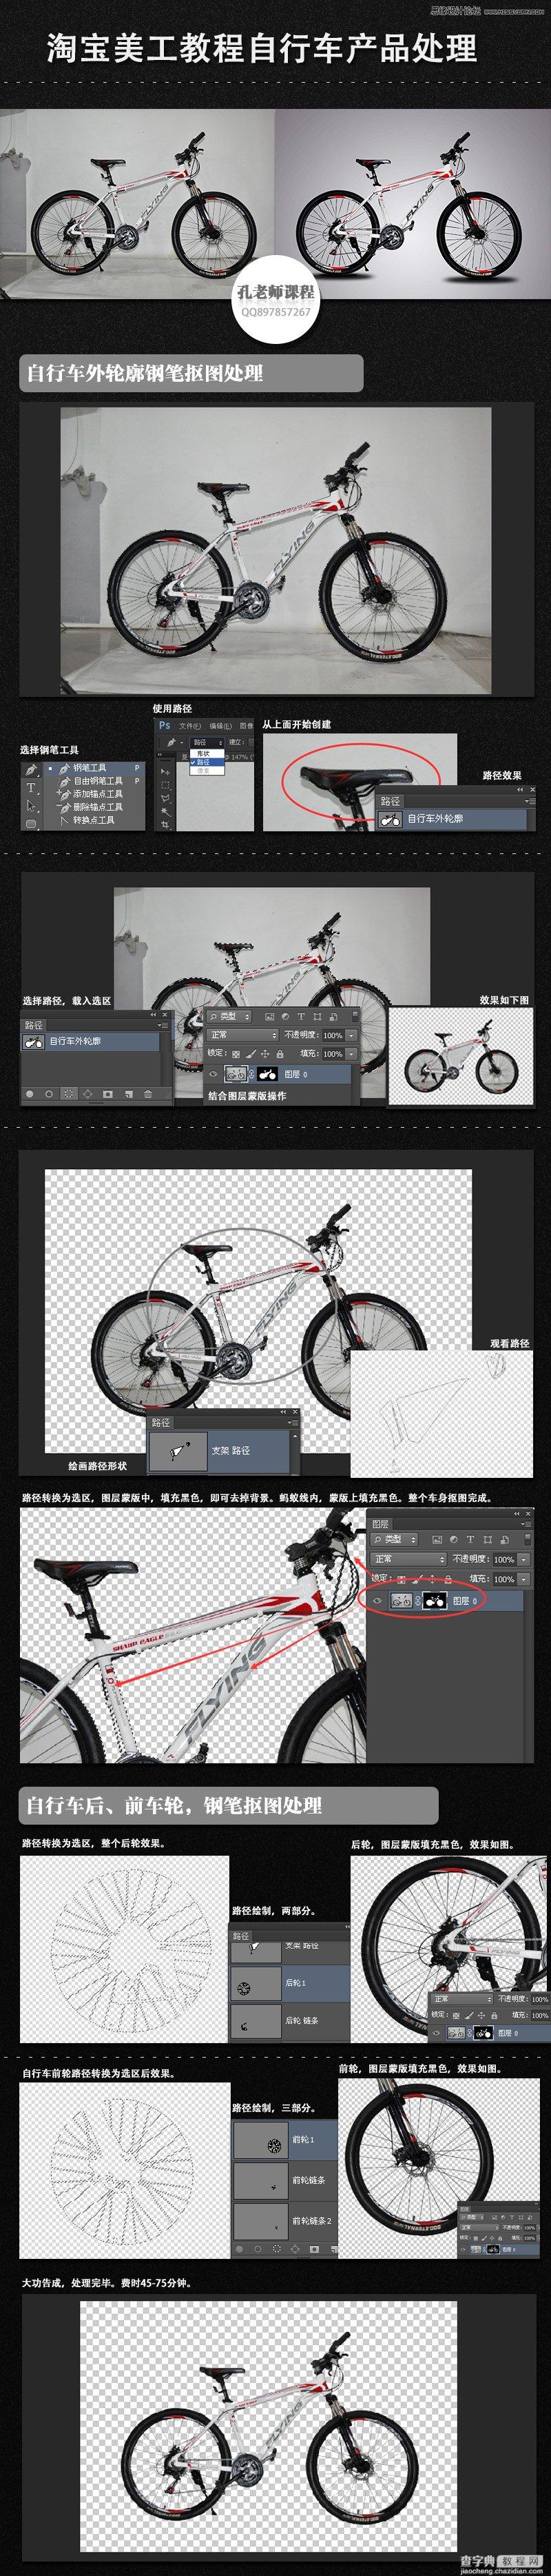 详细解析电商自行车产品Photoshop修图过程1